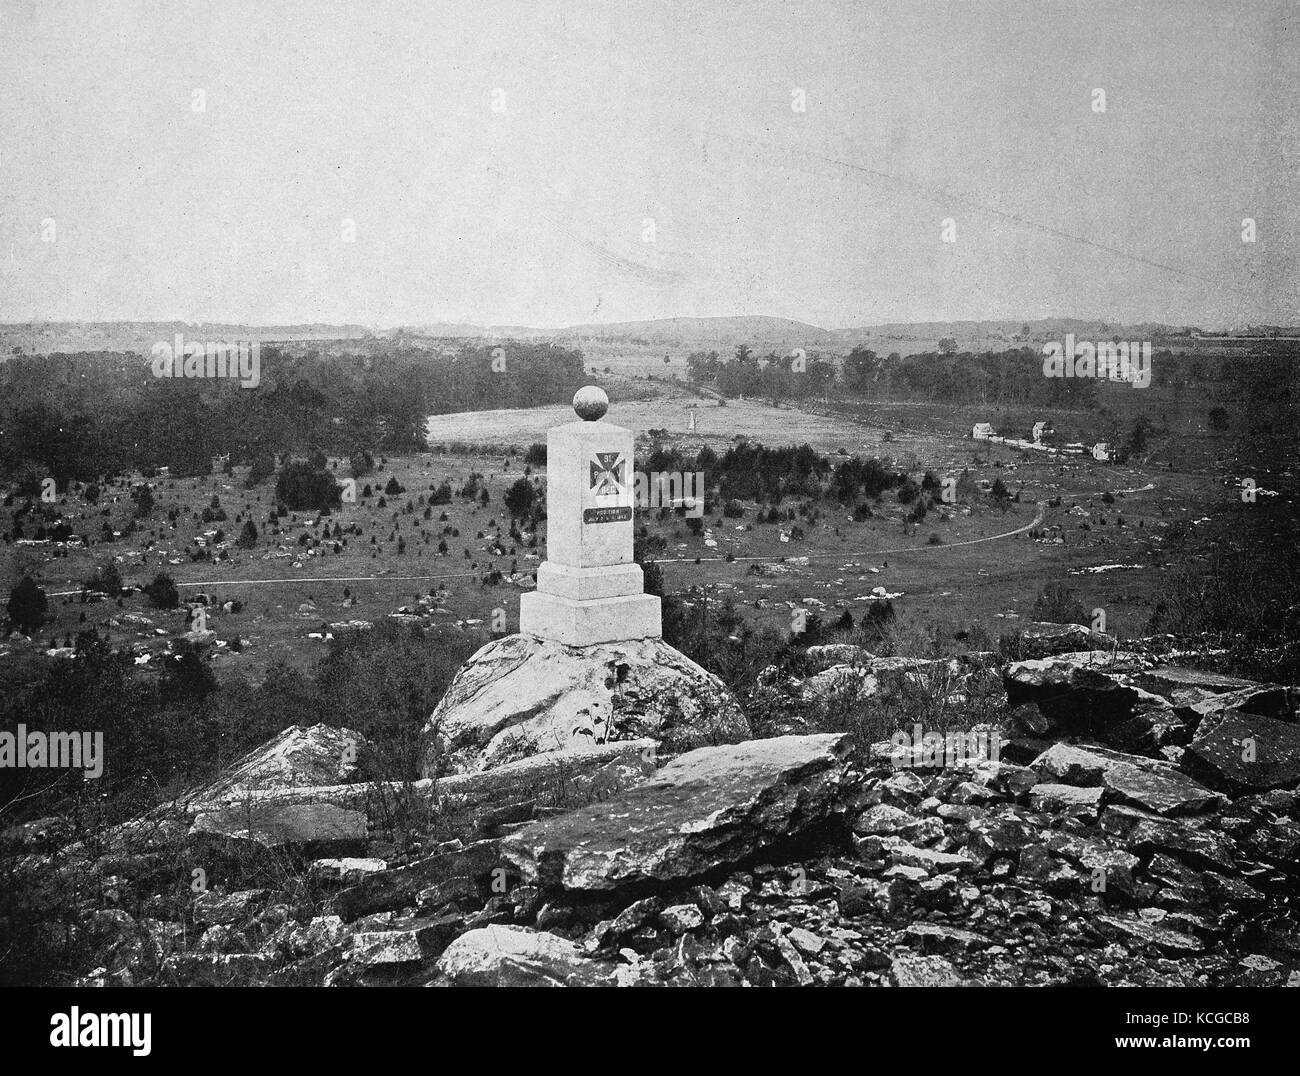 Vereinigte Staaten von Amerika, mit Blick auf das Schlachtfeld von Gettysburg in Pennsyvania, Theater des Krieges des Bürgerkrieges zwischen den Nordstaaten und den Südstaaten, Juli 1863, digital verbesserte Reproduktion einer historischen Foto aus dem (geschätzten) Jahr 1899 Stockfoto